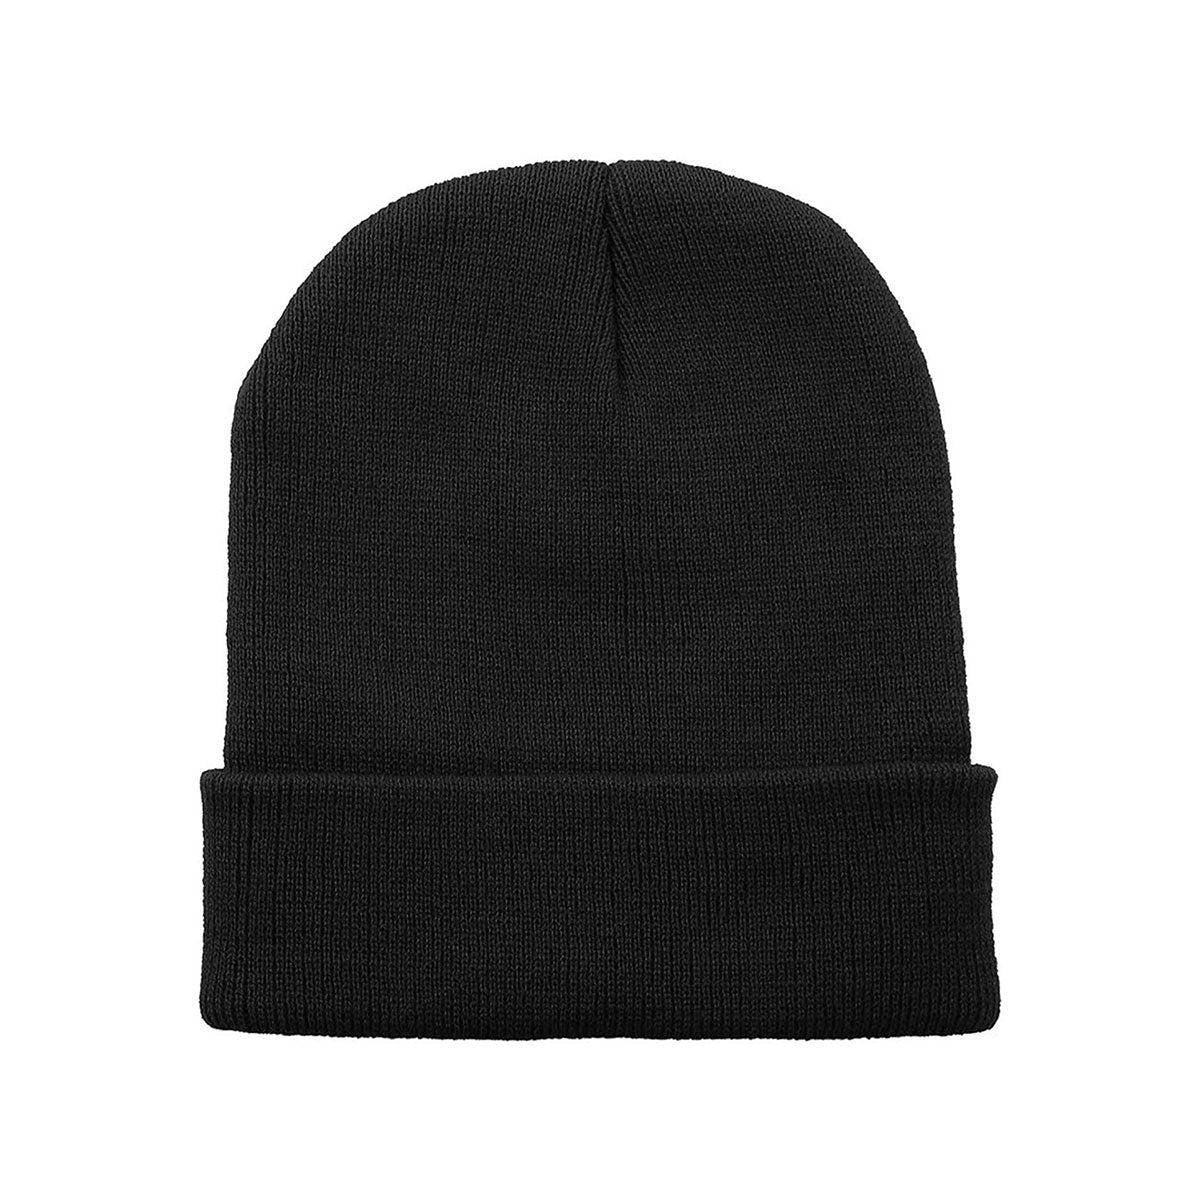 Winter Beanie Hat - Black